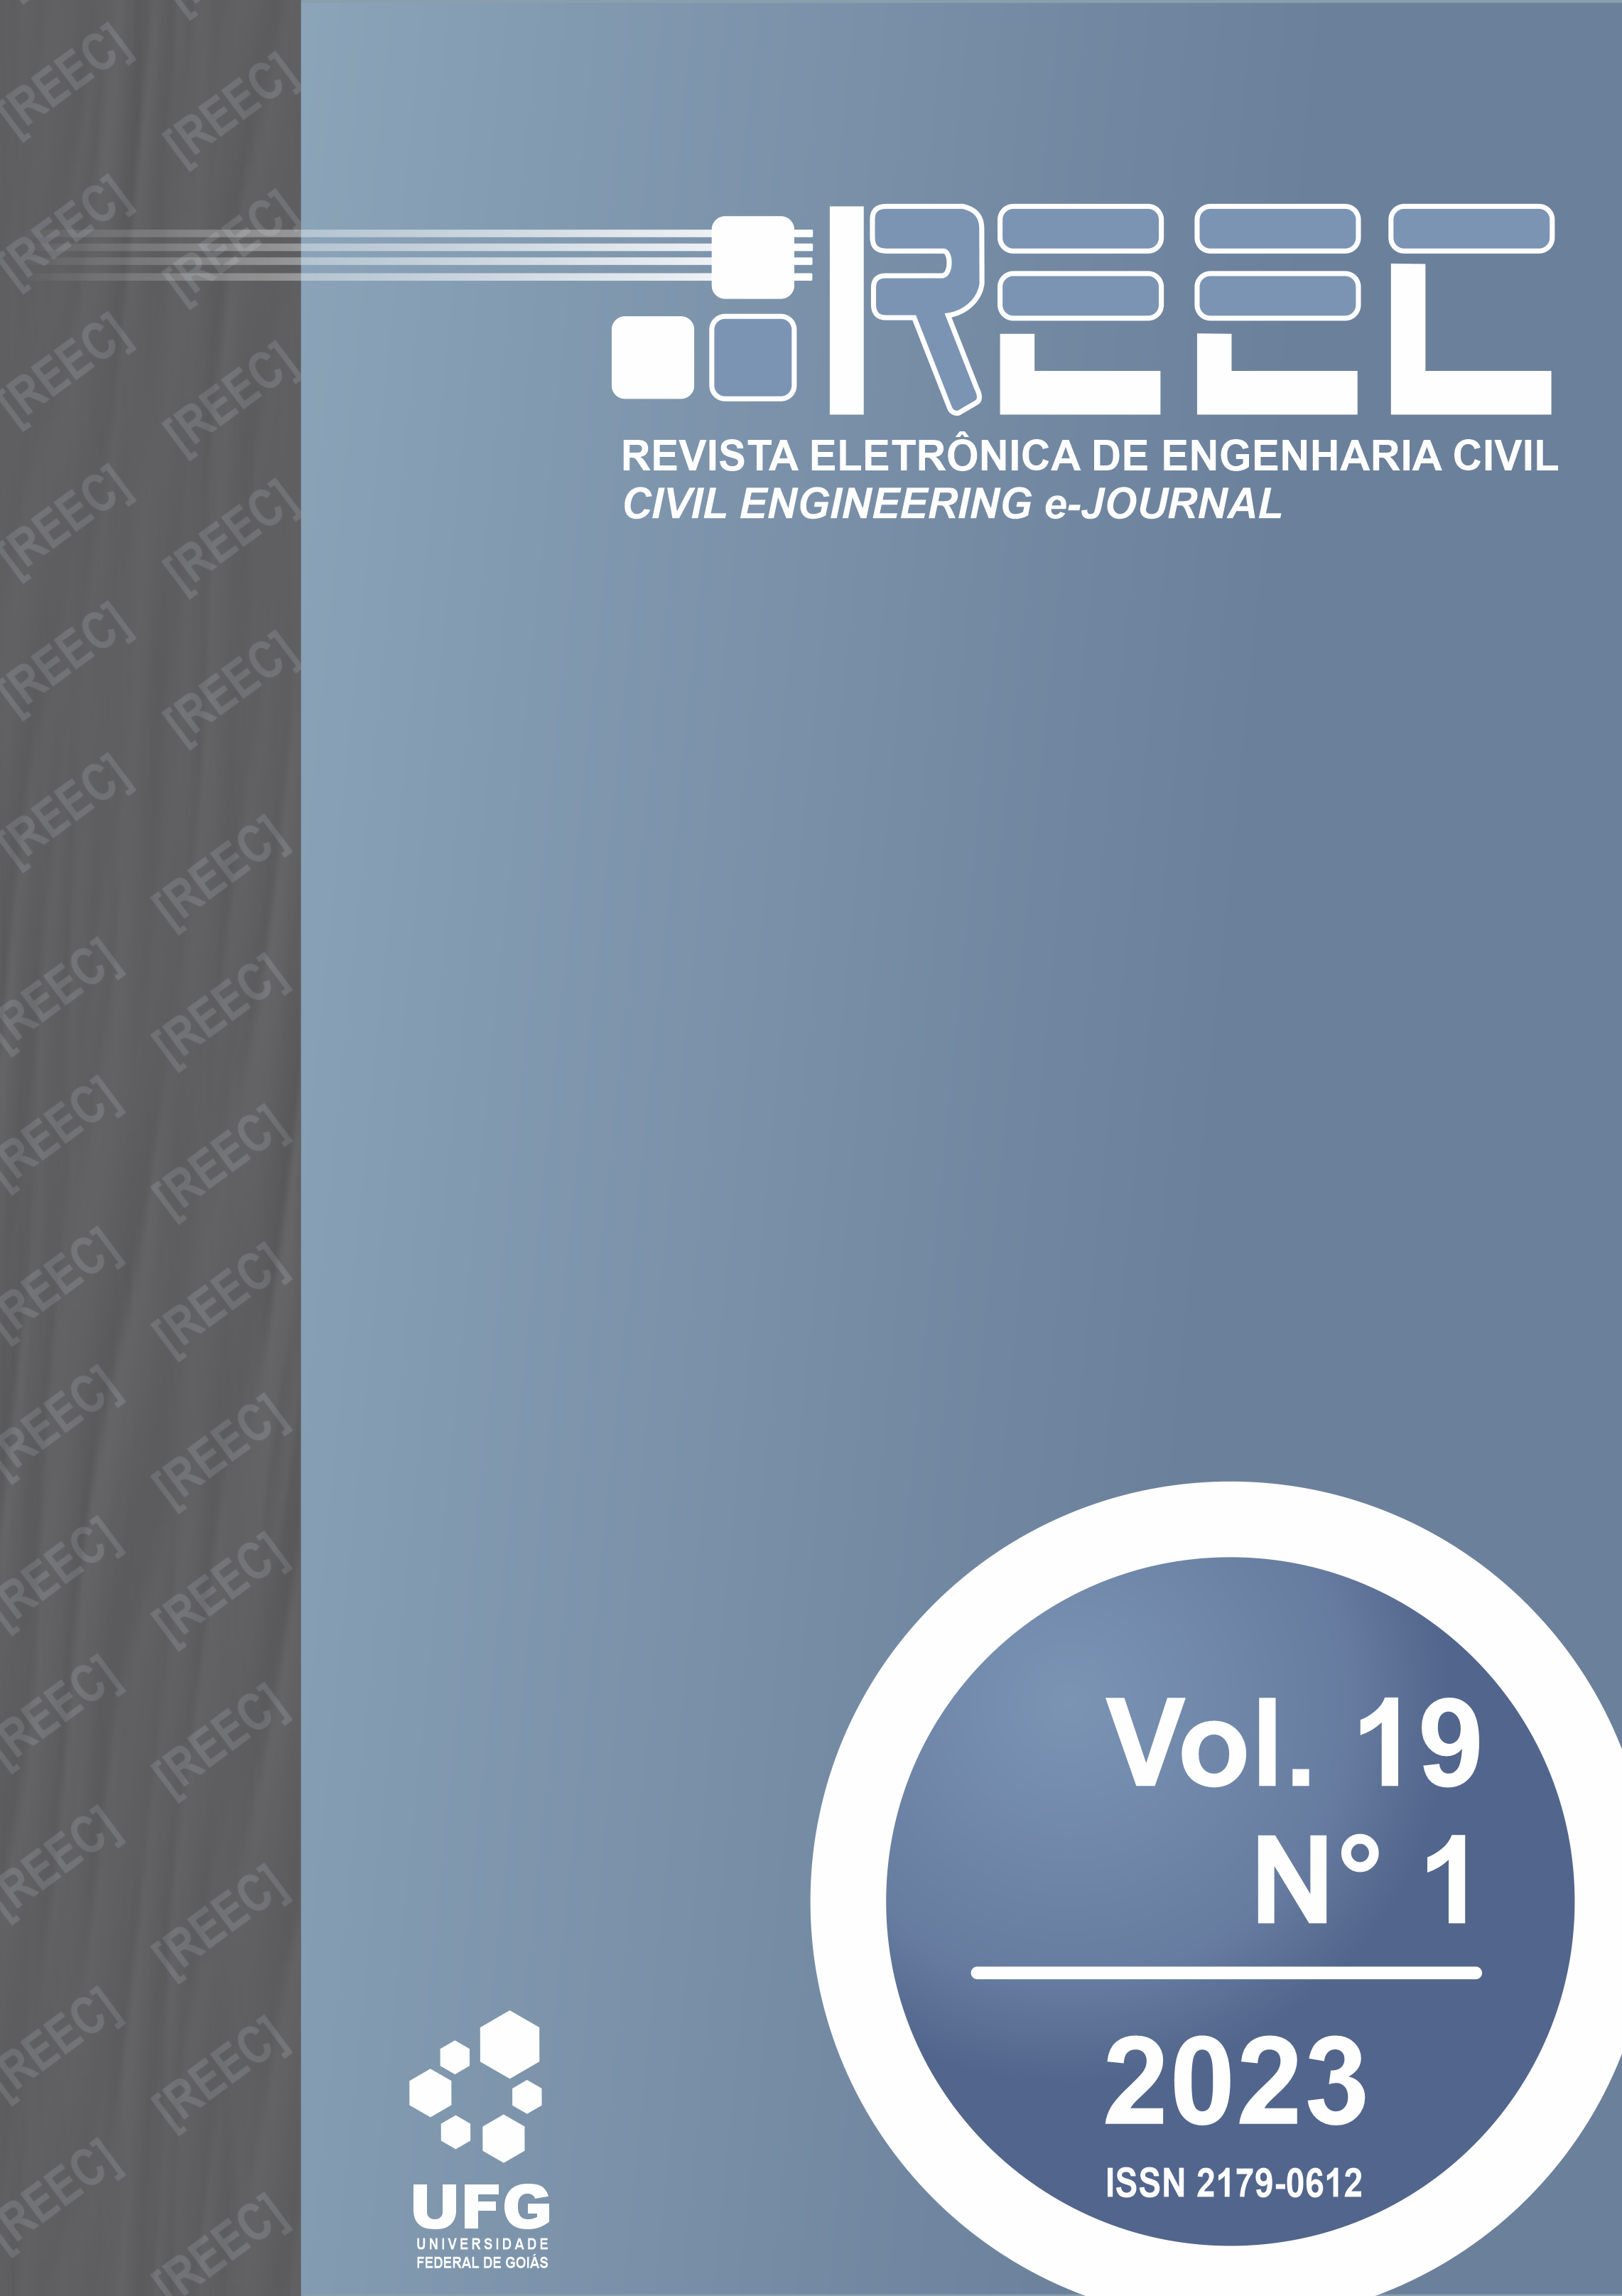 					Visualizar v. 19 n. 1 (2023): [REEC] Revista Eletrônica de Engenharia Civil - Vol. 19, n° 1, 2023
				